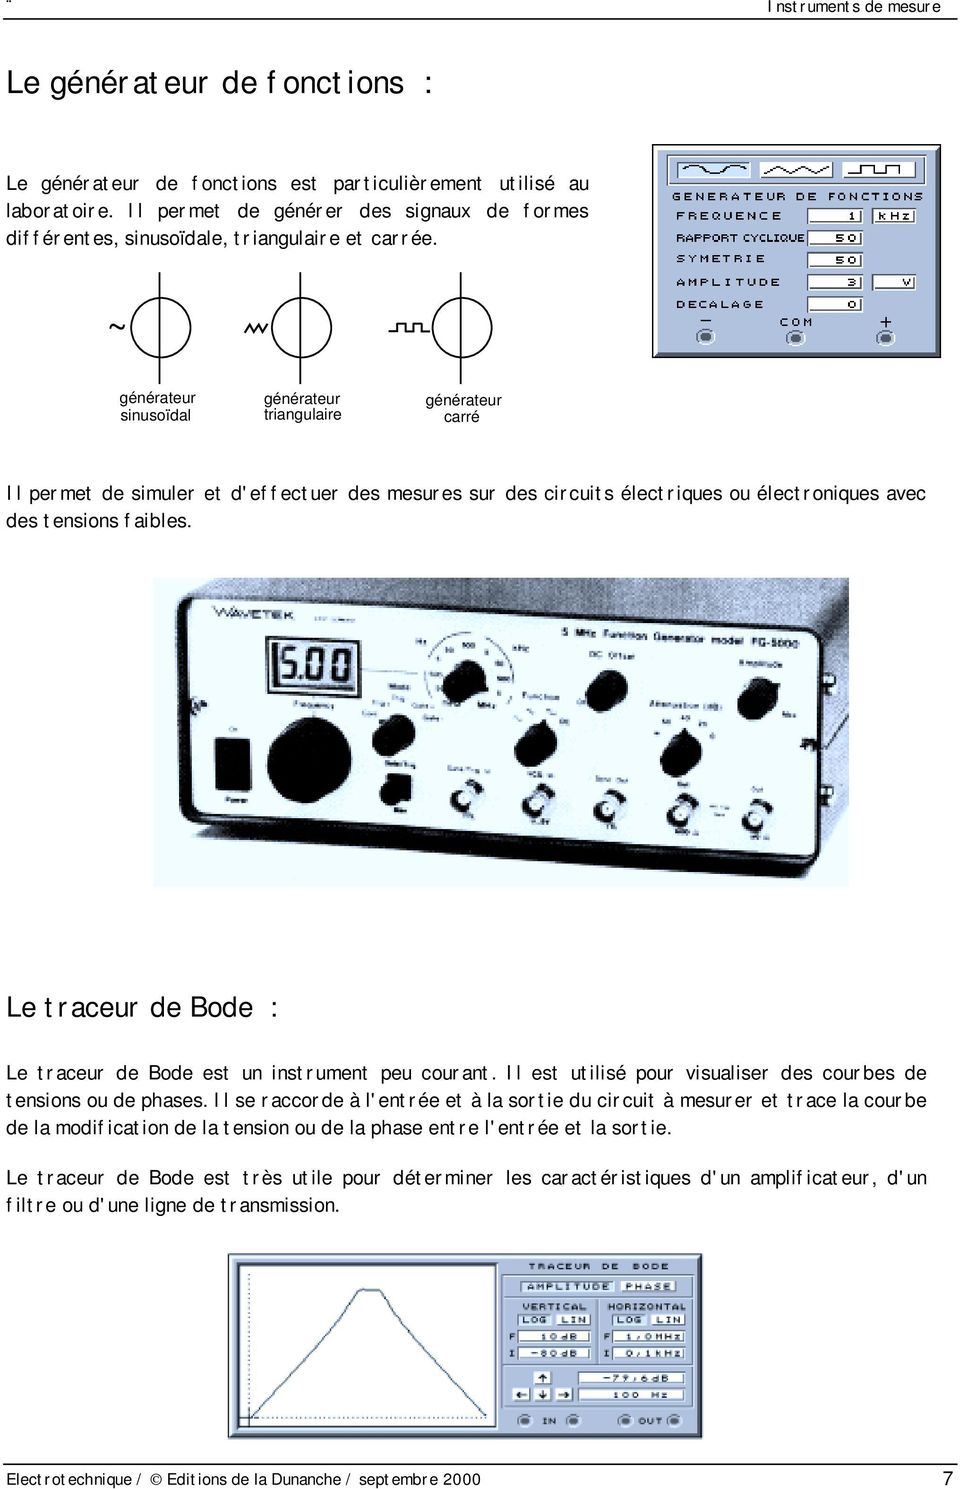 Le traceur de Bode : Le traceur de Bode est un instrument peu courant. Il est utilisé pour visualiser des courbes de tensions ou de phases.